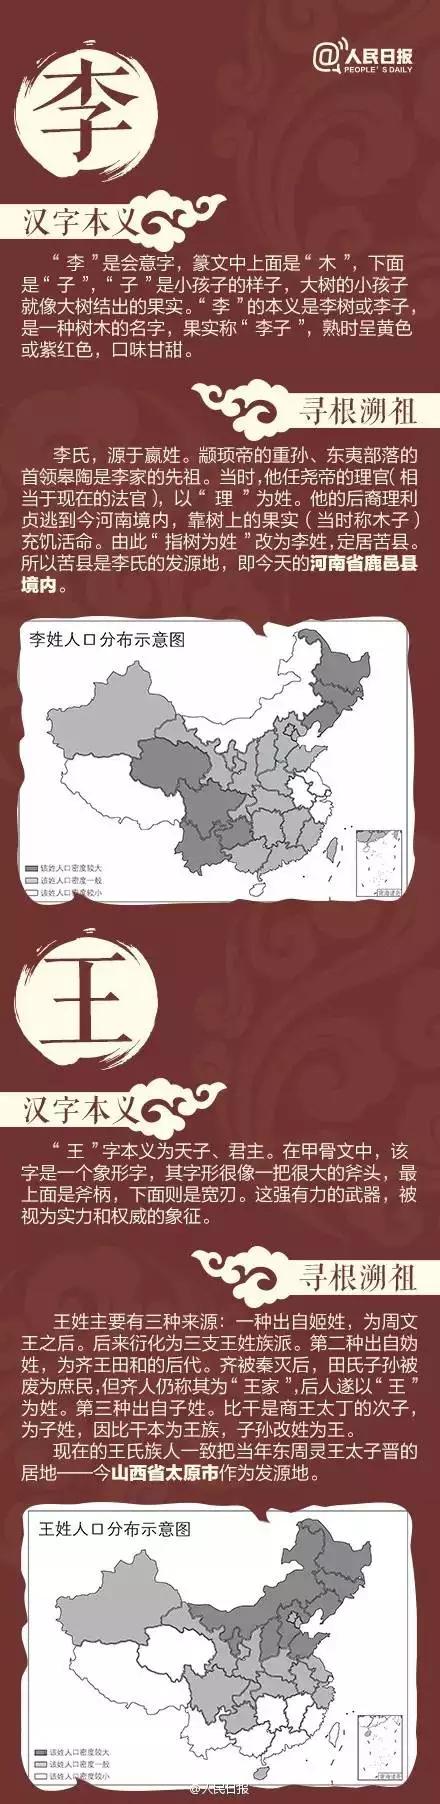 董姓氏起源和分布图,中国仅剩一人的姓氏(1)